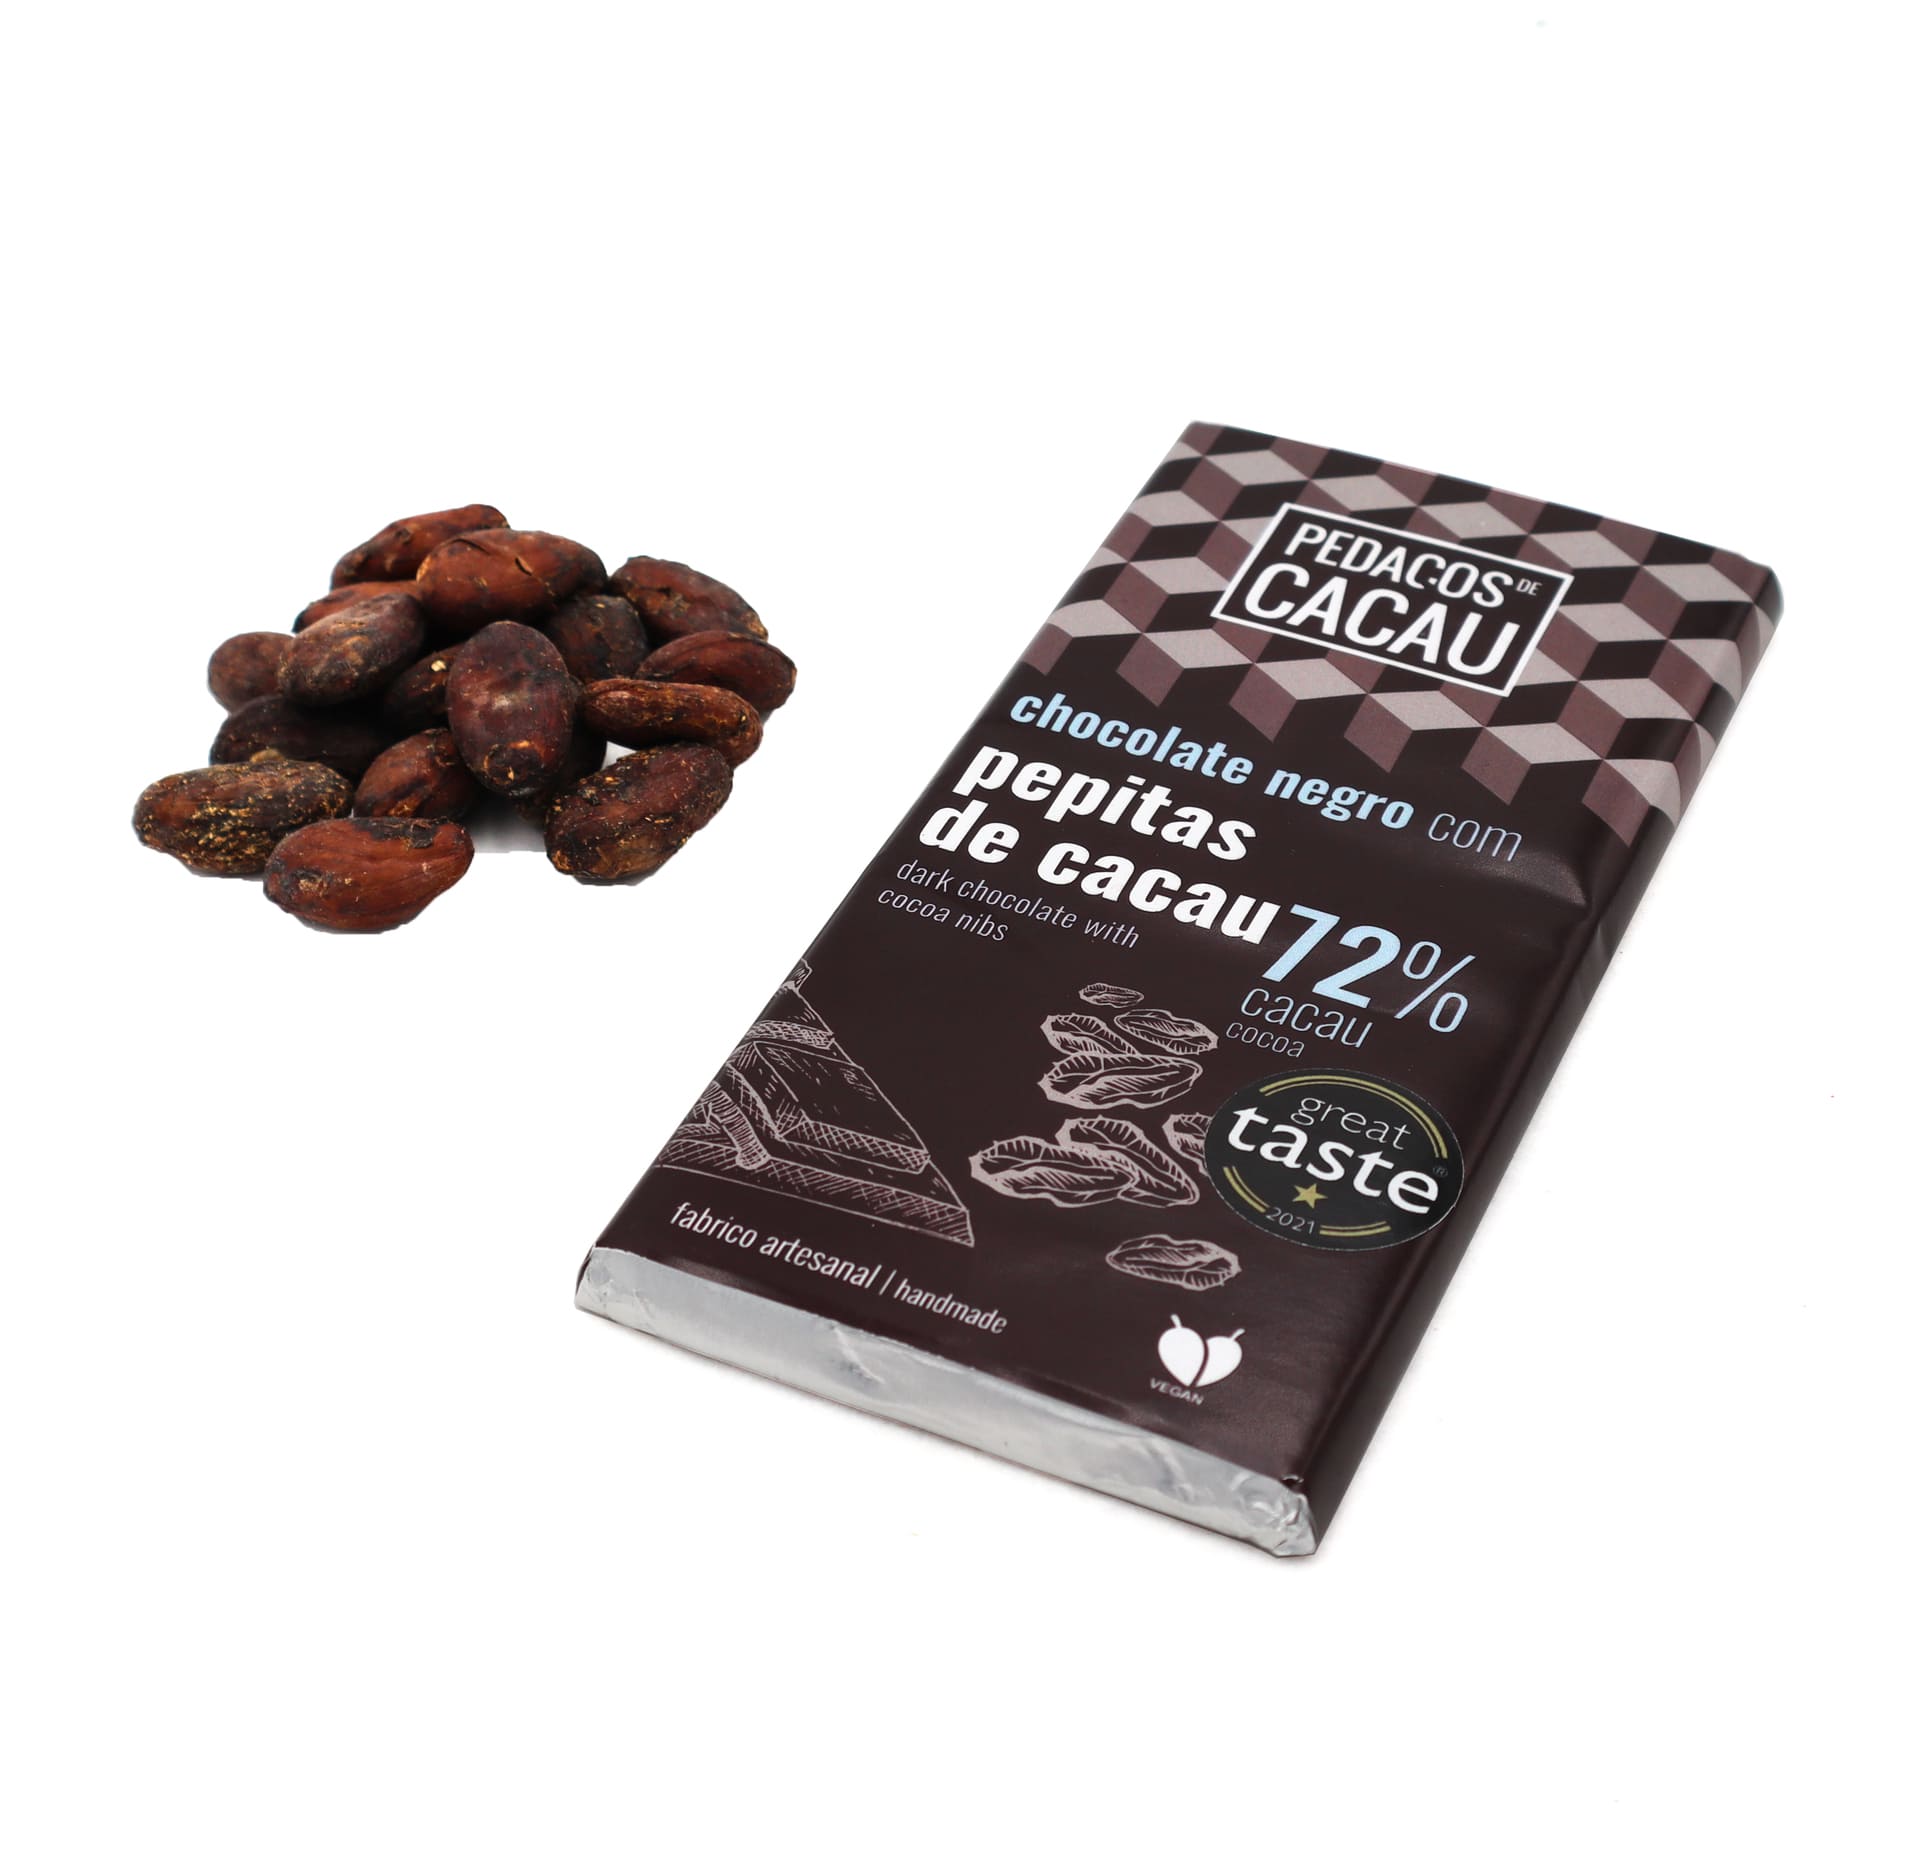 100g Chocolate Bar – Cocoa Nibs